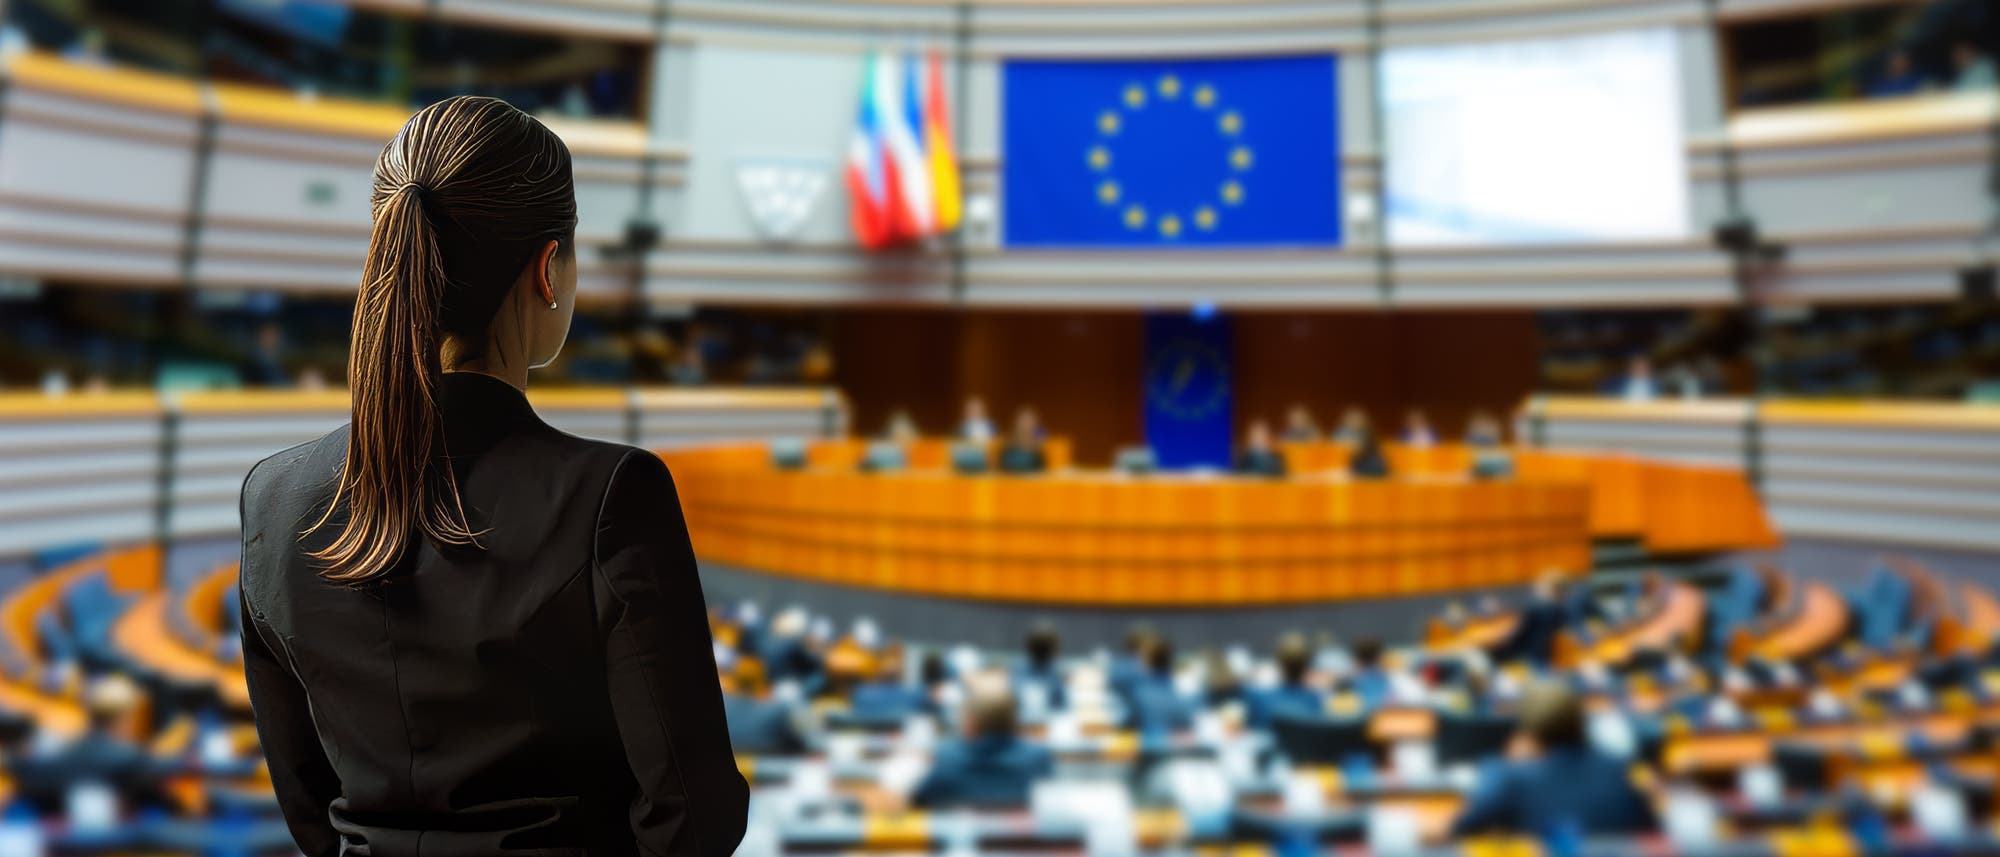 Eine Frau von hinten sichtbar im Zuschauerbereich vor Plenum des Europäischen Parlaments.